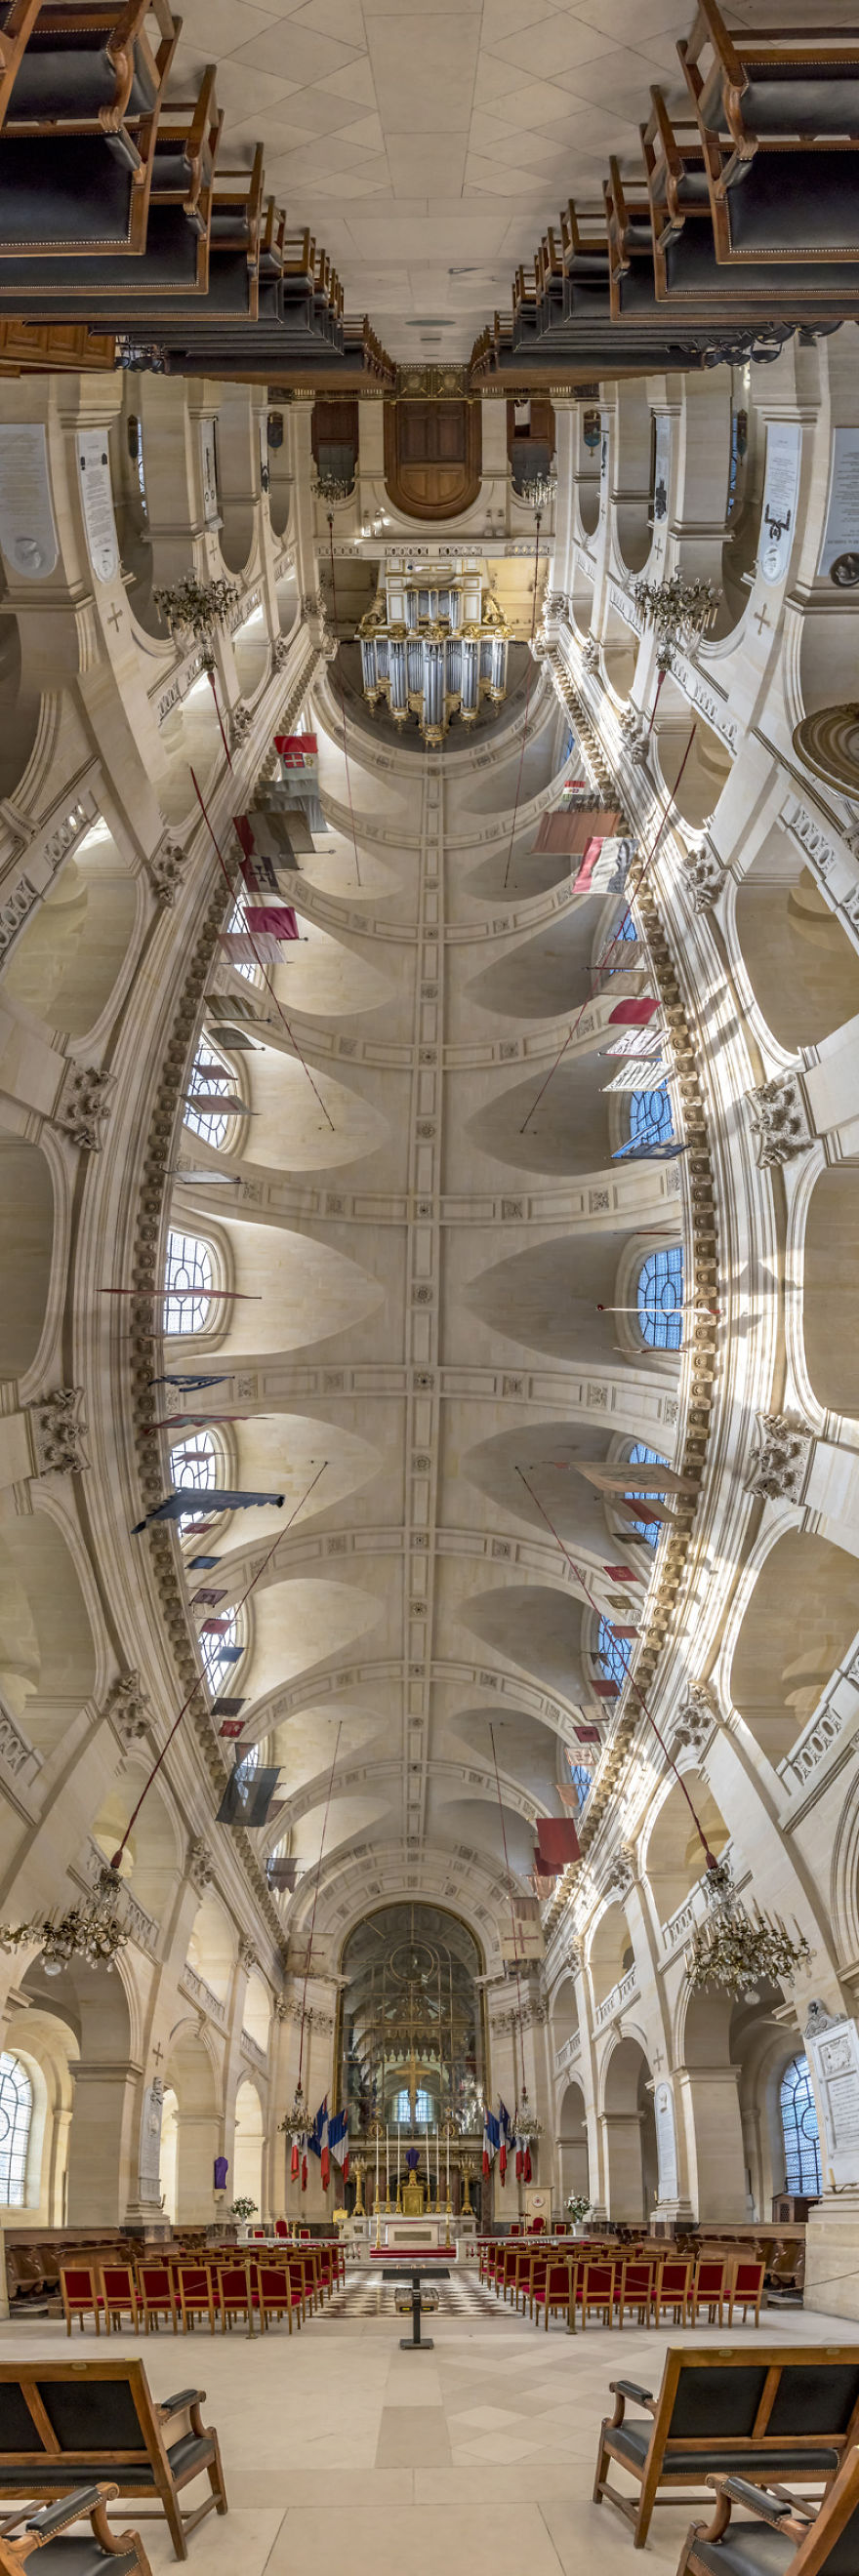  churches paris photographed unique way 